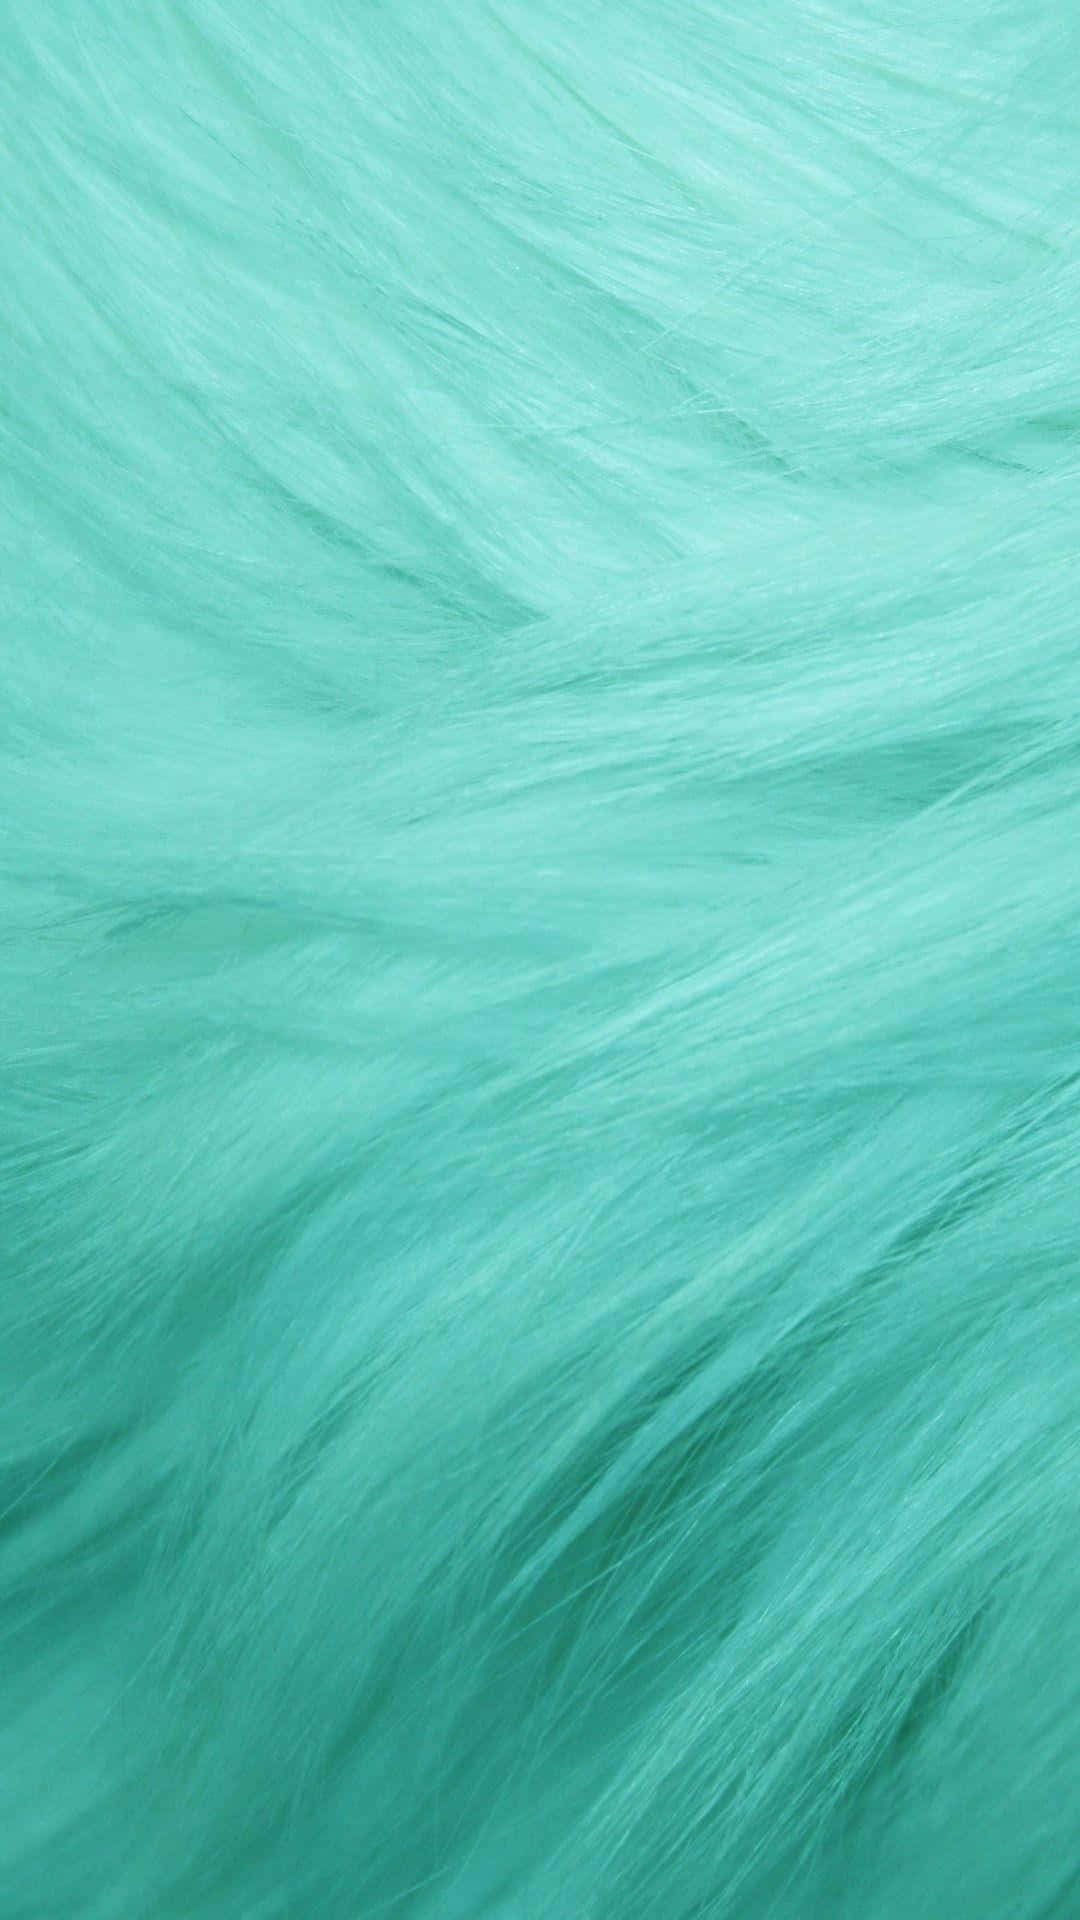 turquoise background